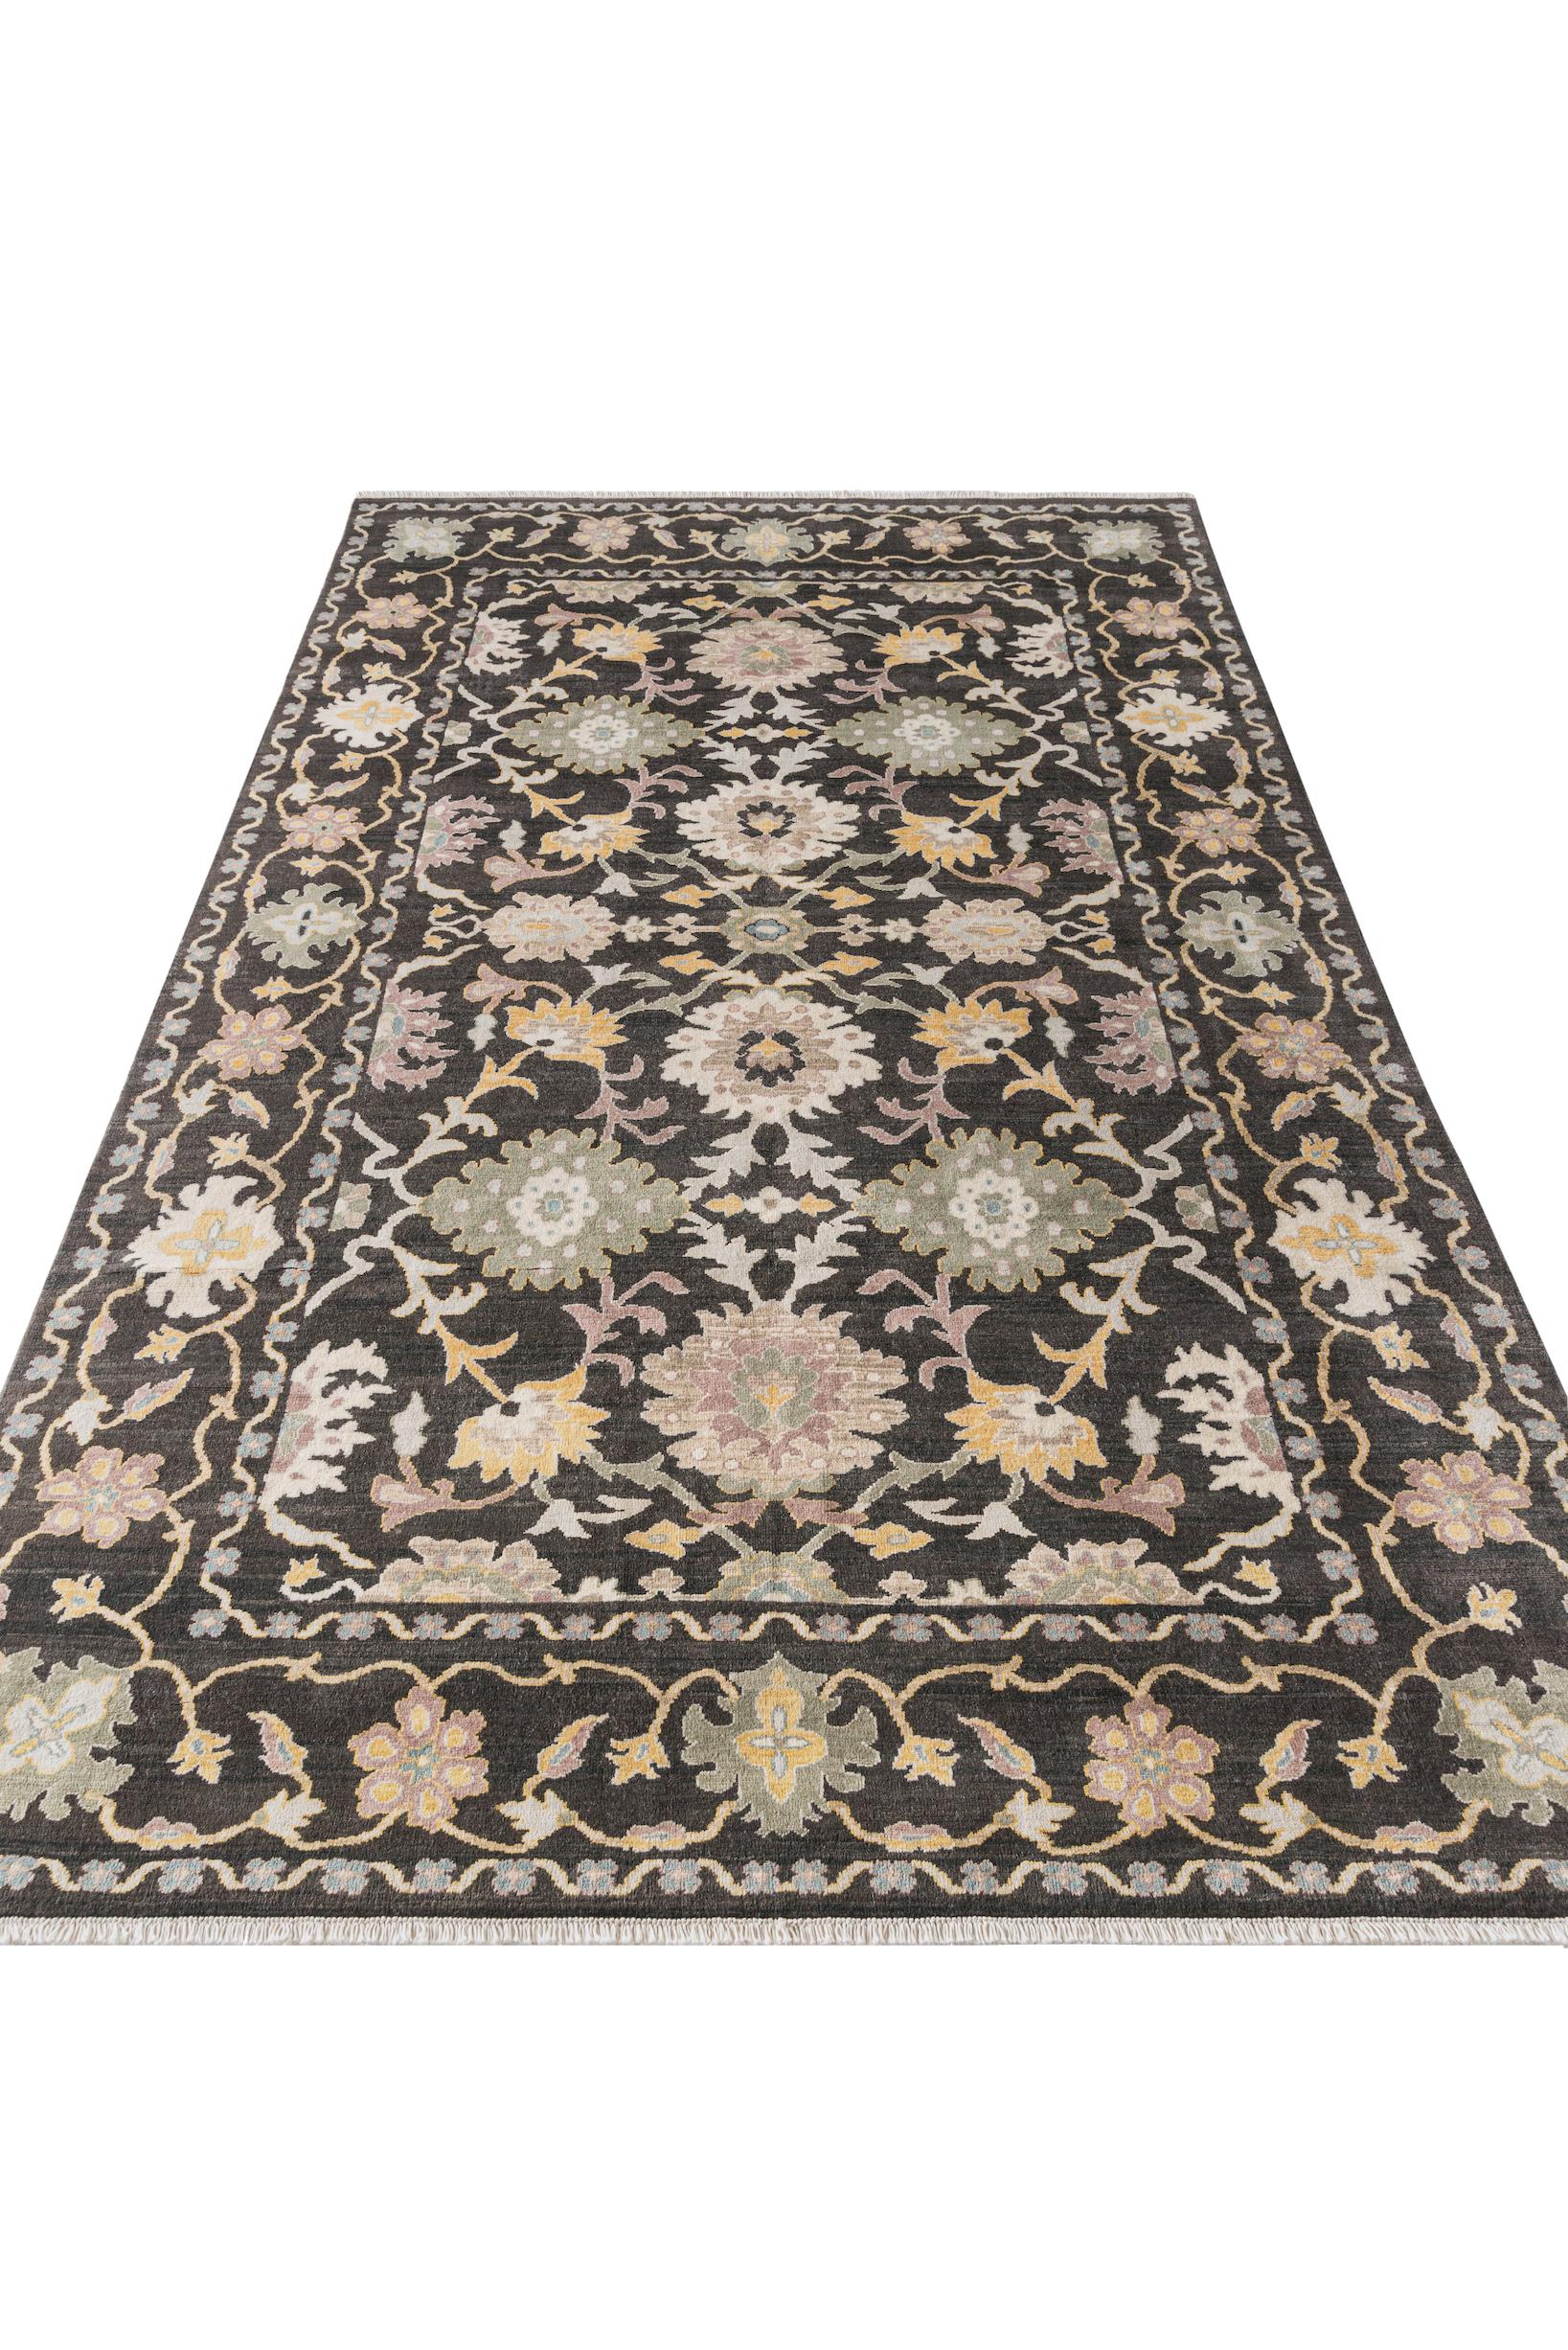 A propos du tapis :
Ce Ziegler floral inspiré du XIXe siècle est un tapis unique en raison de sa nature artisanale. Il est tissé à la main par des artisans égyptiens avec de la laine 100 % égyptienne teintée à la main. Le tapis est d'une taille